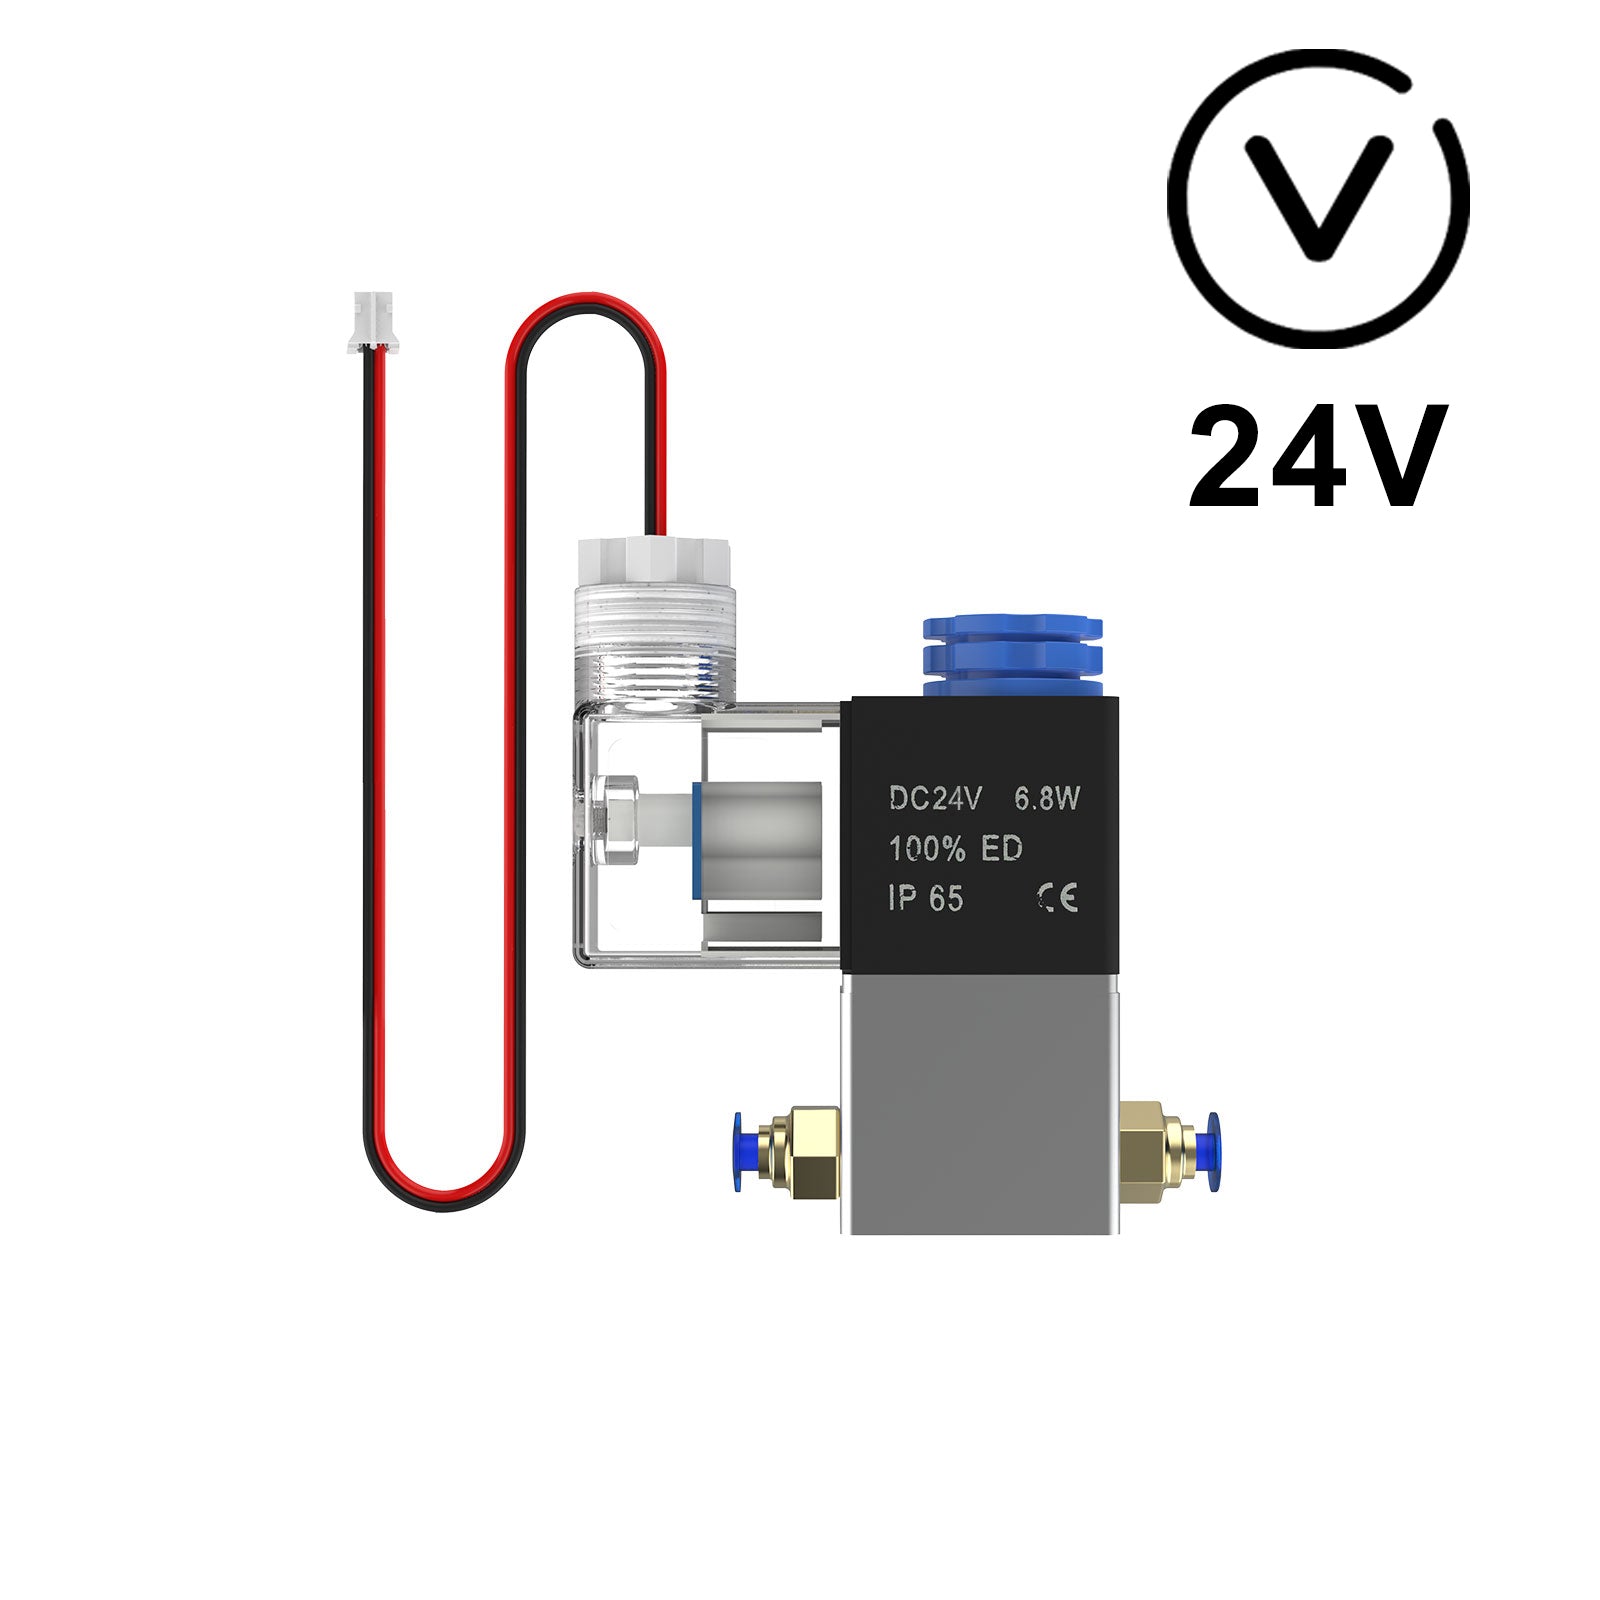 NEJE AF3 12V / 24V Auto Control Electromagnetic Valve Air Assist Kit for New NEJE Laser Module with NEJE Series Machine - M8 Control